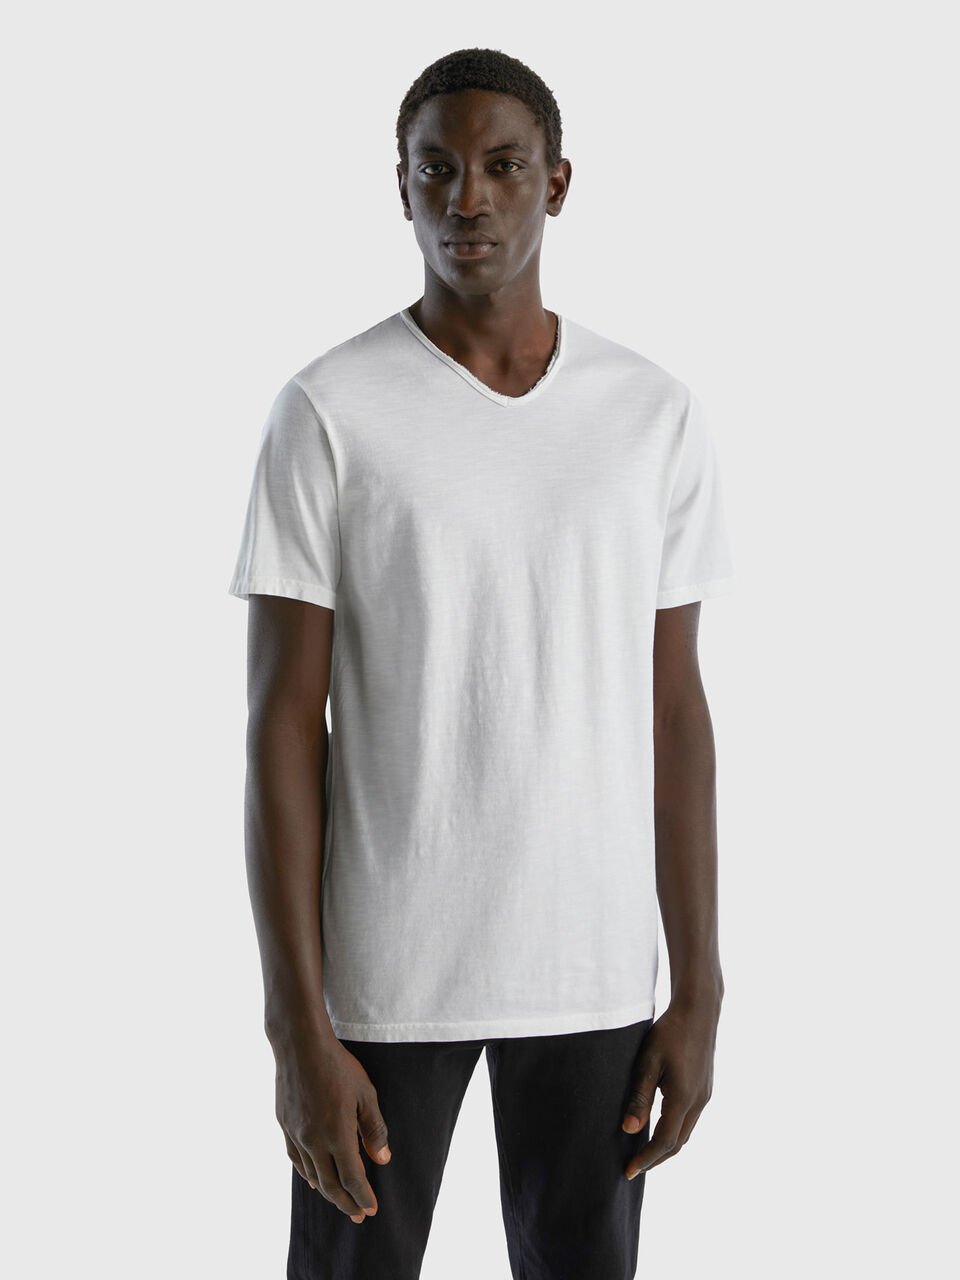 V-neck t-shirt in 100% cotton - White | Benetton